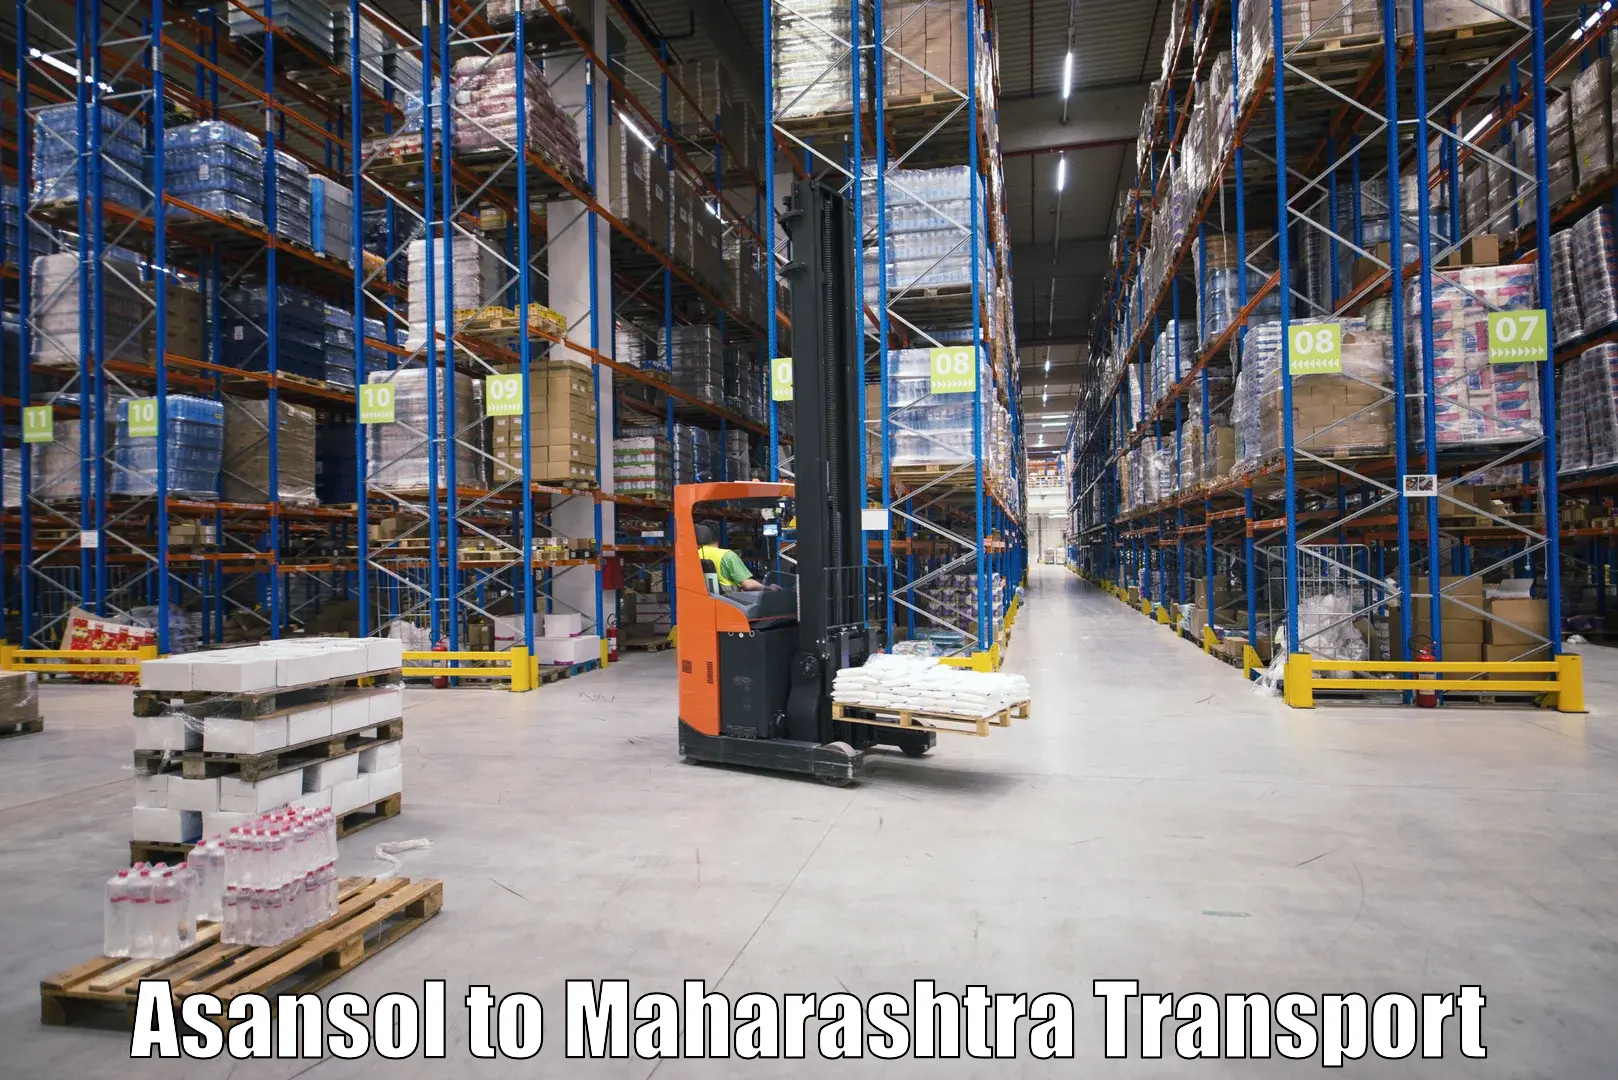 Furniture transport service Asansol to Kudus